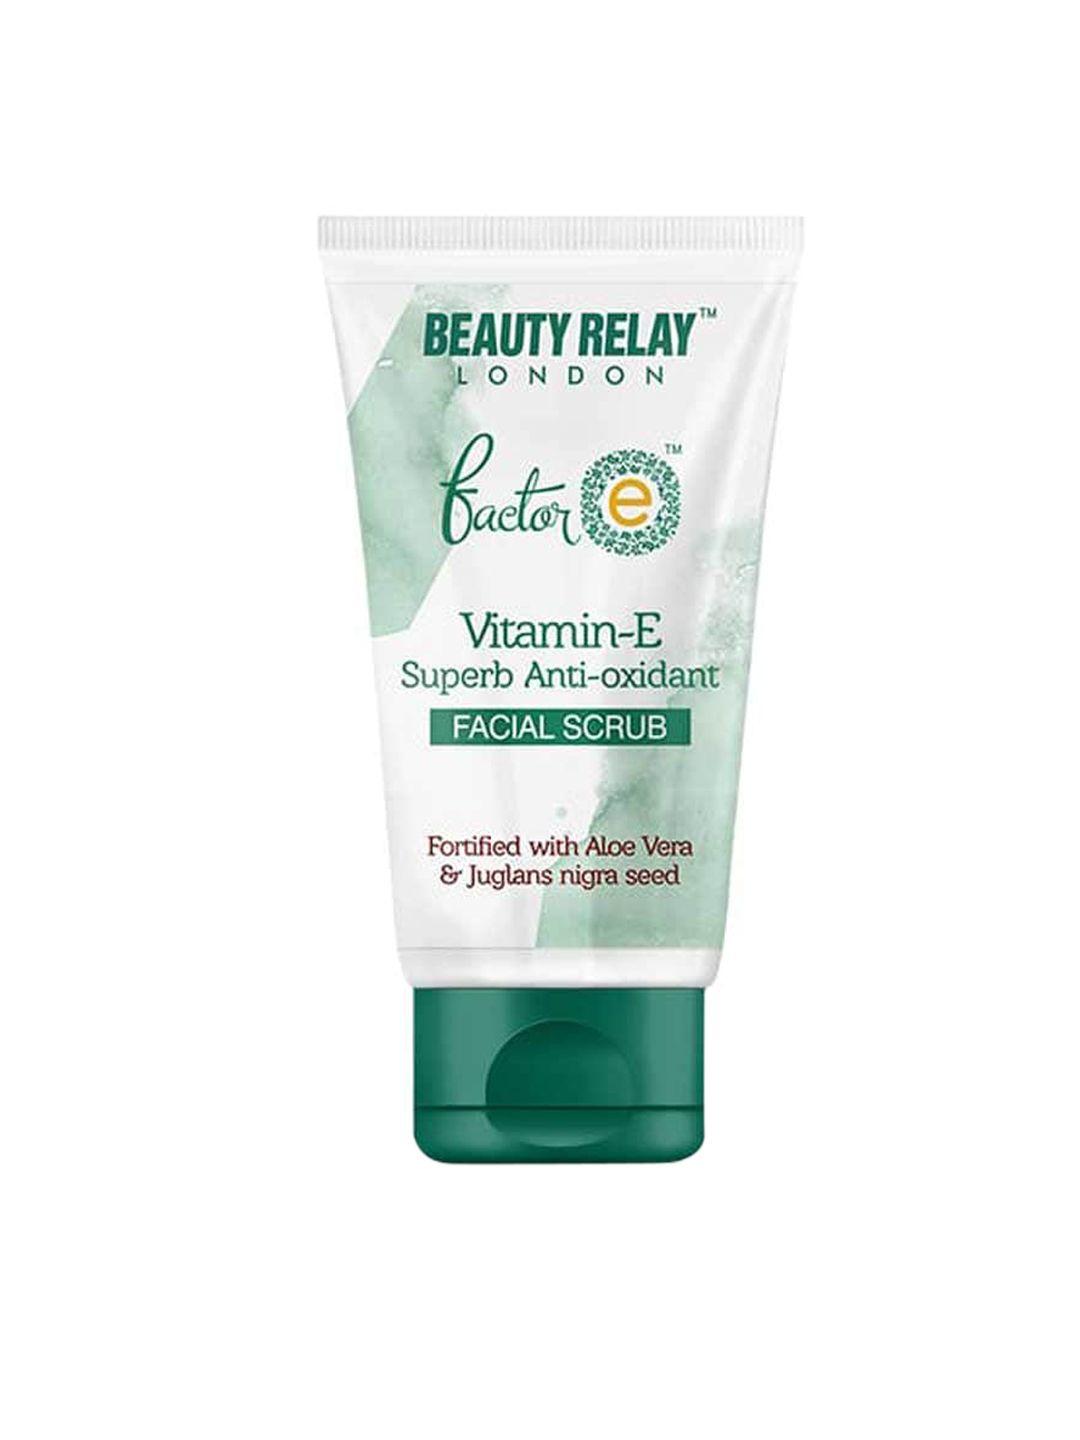 beautyrelay london factor e vitamin-e superb anti-oxidant face scrub with aloevera - 180 g